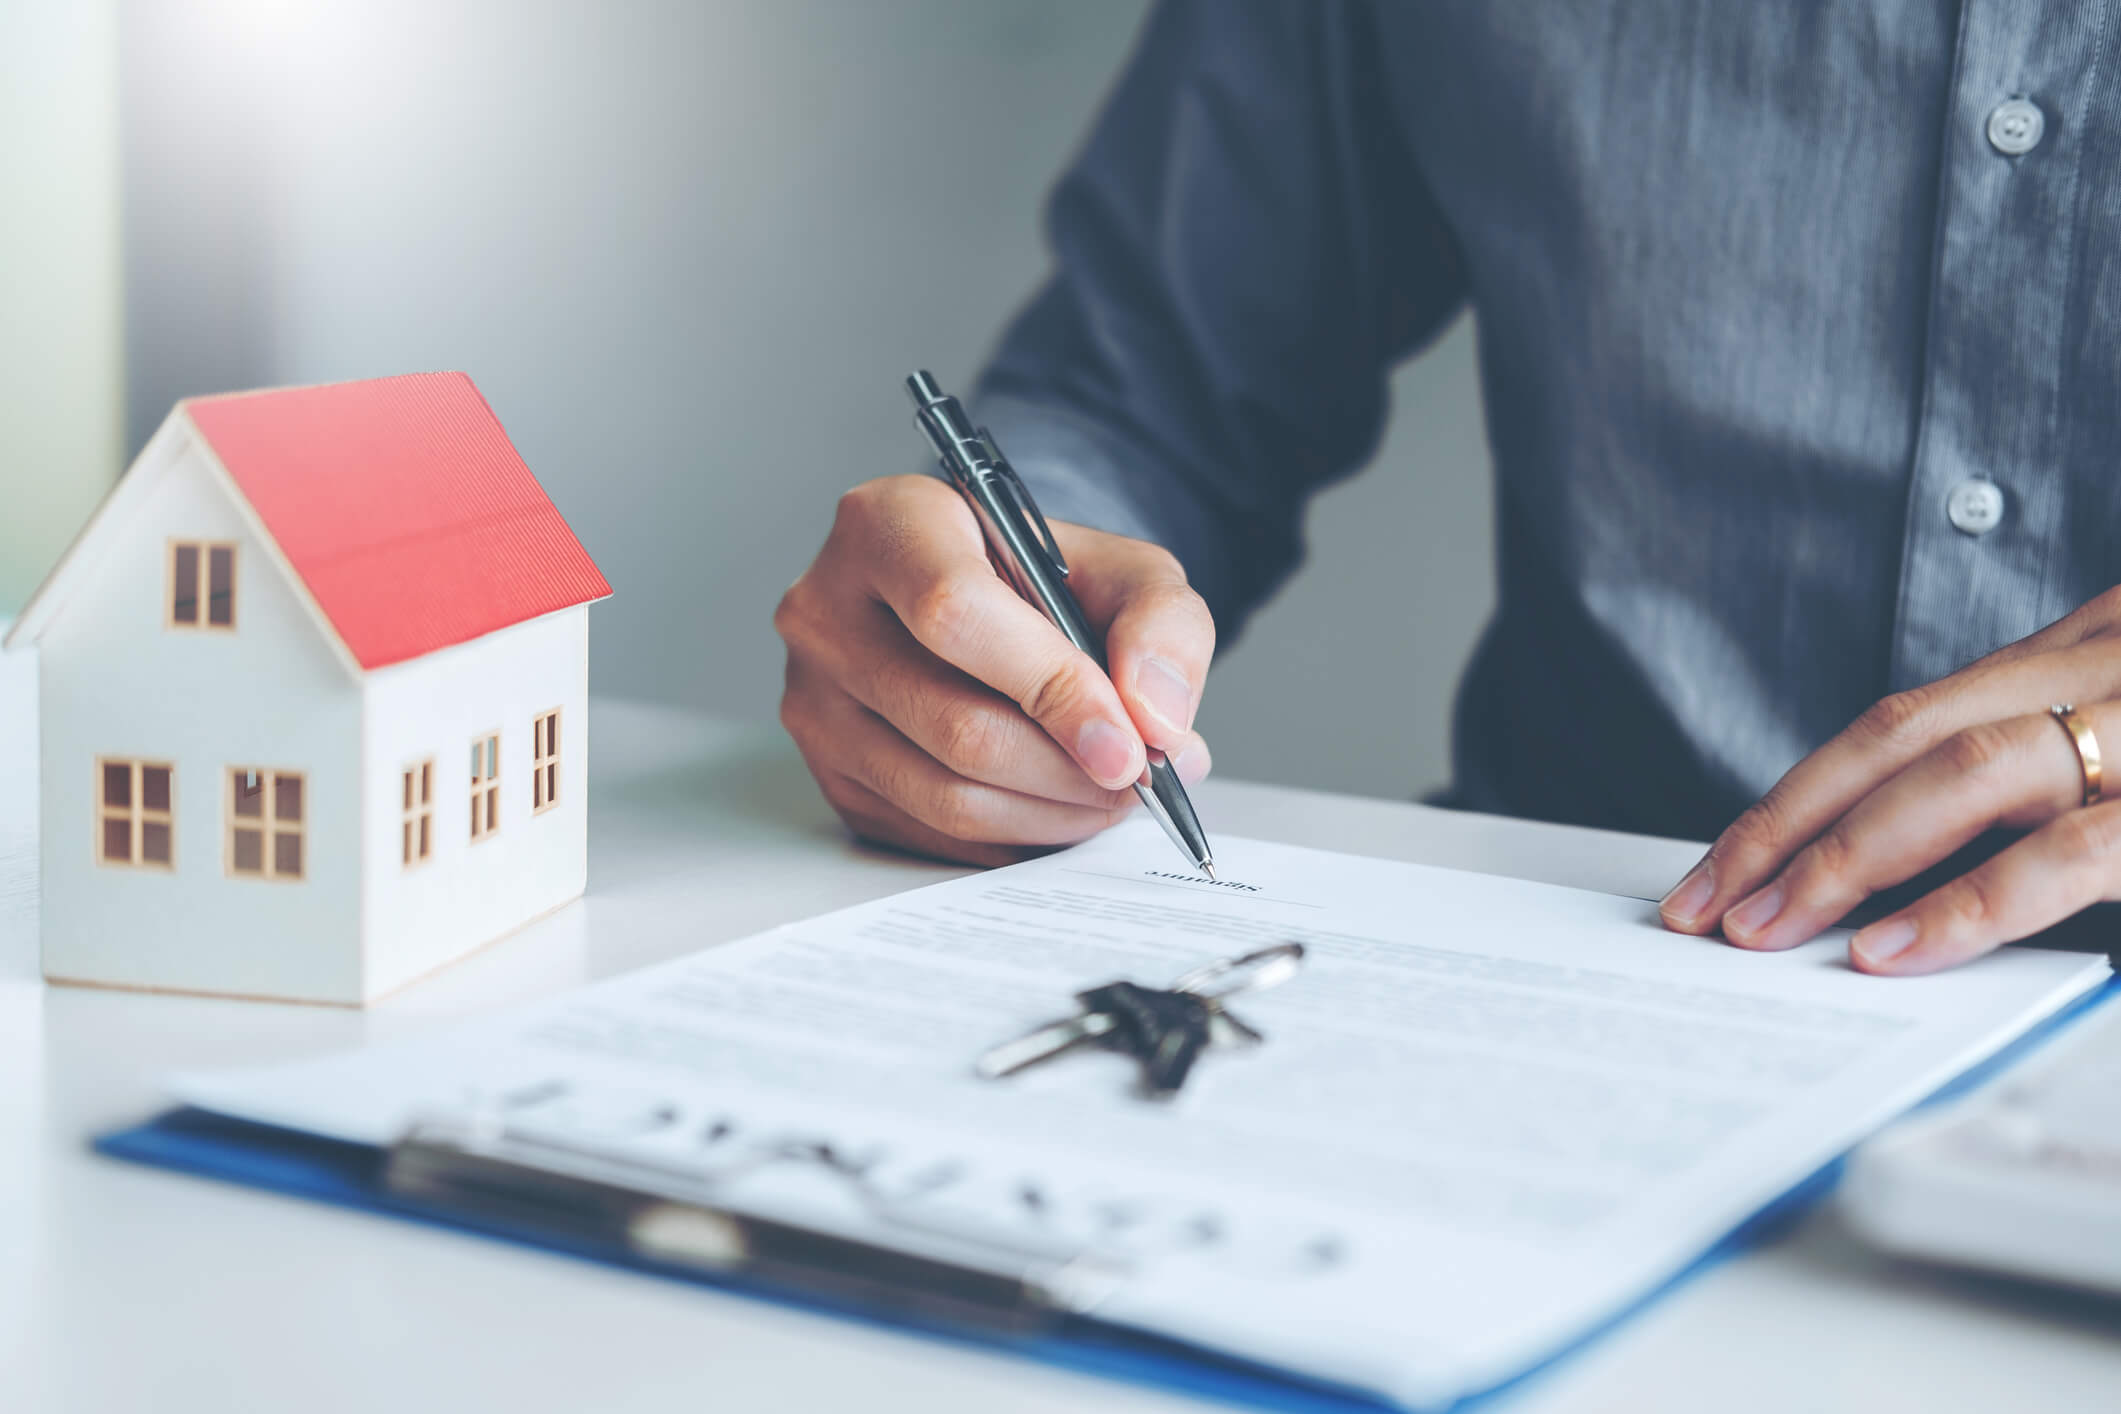 Em uma mesa, homem assina um contrato ao lado de uma casa em miniatura | Diminuir o valor de financiamento imobiliário | Blog da Tenda